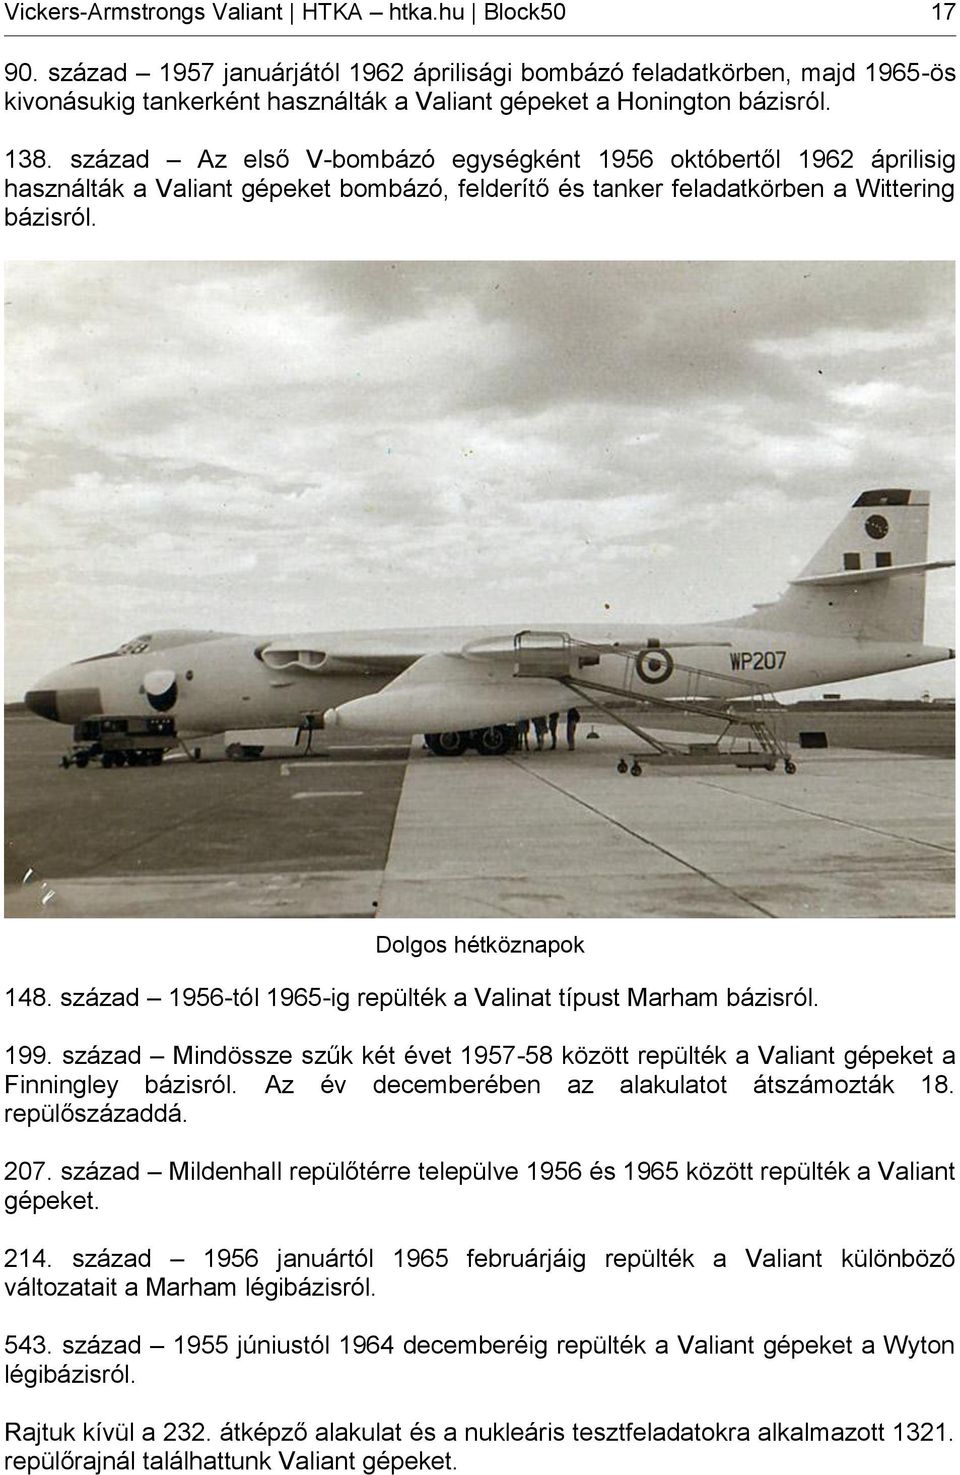 század Az első V-bombázó egységként 1956 októbertől 1962 áprilisig használták a Valiant gépeket bombázó, felderítő és tanker feladatkörben a Wittering bázisról. Dolgos hétköznapok 148.